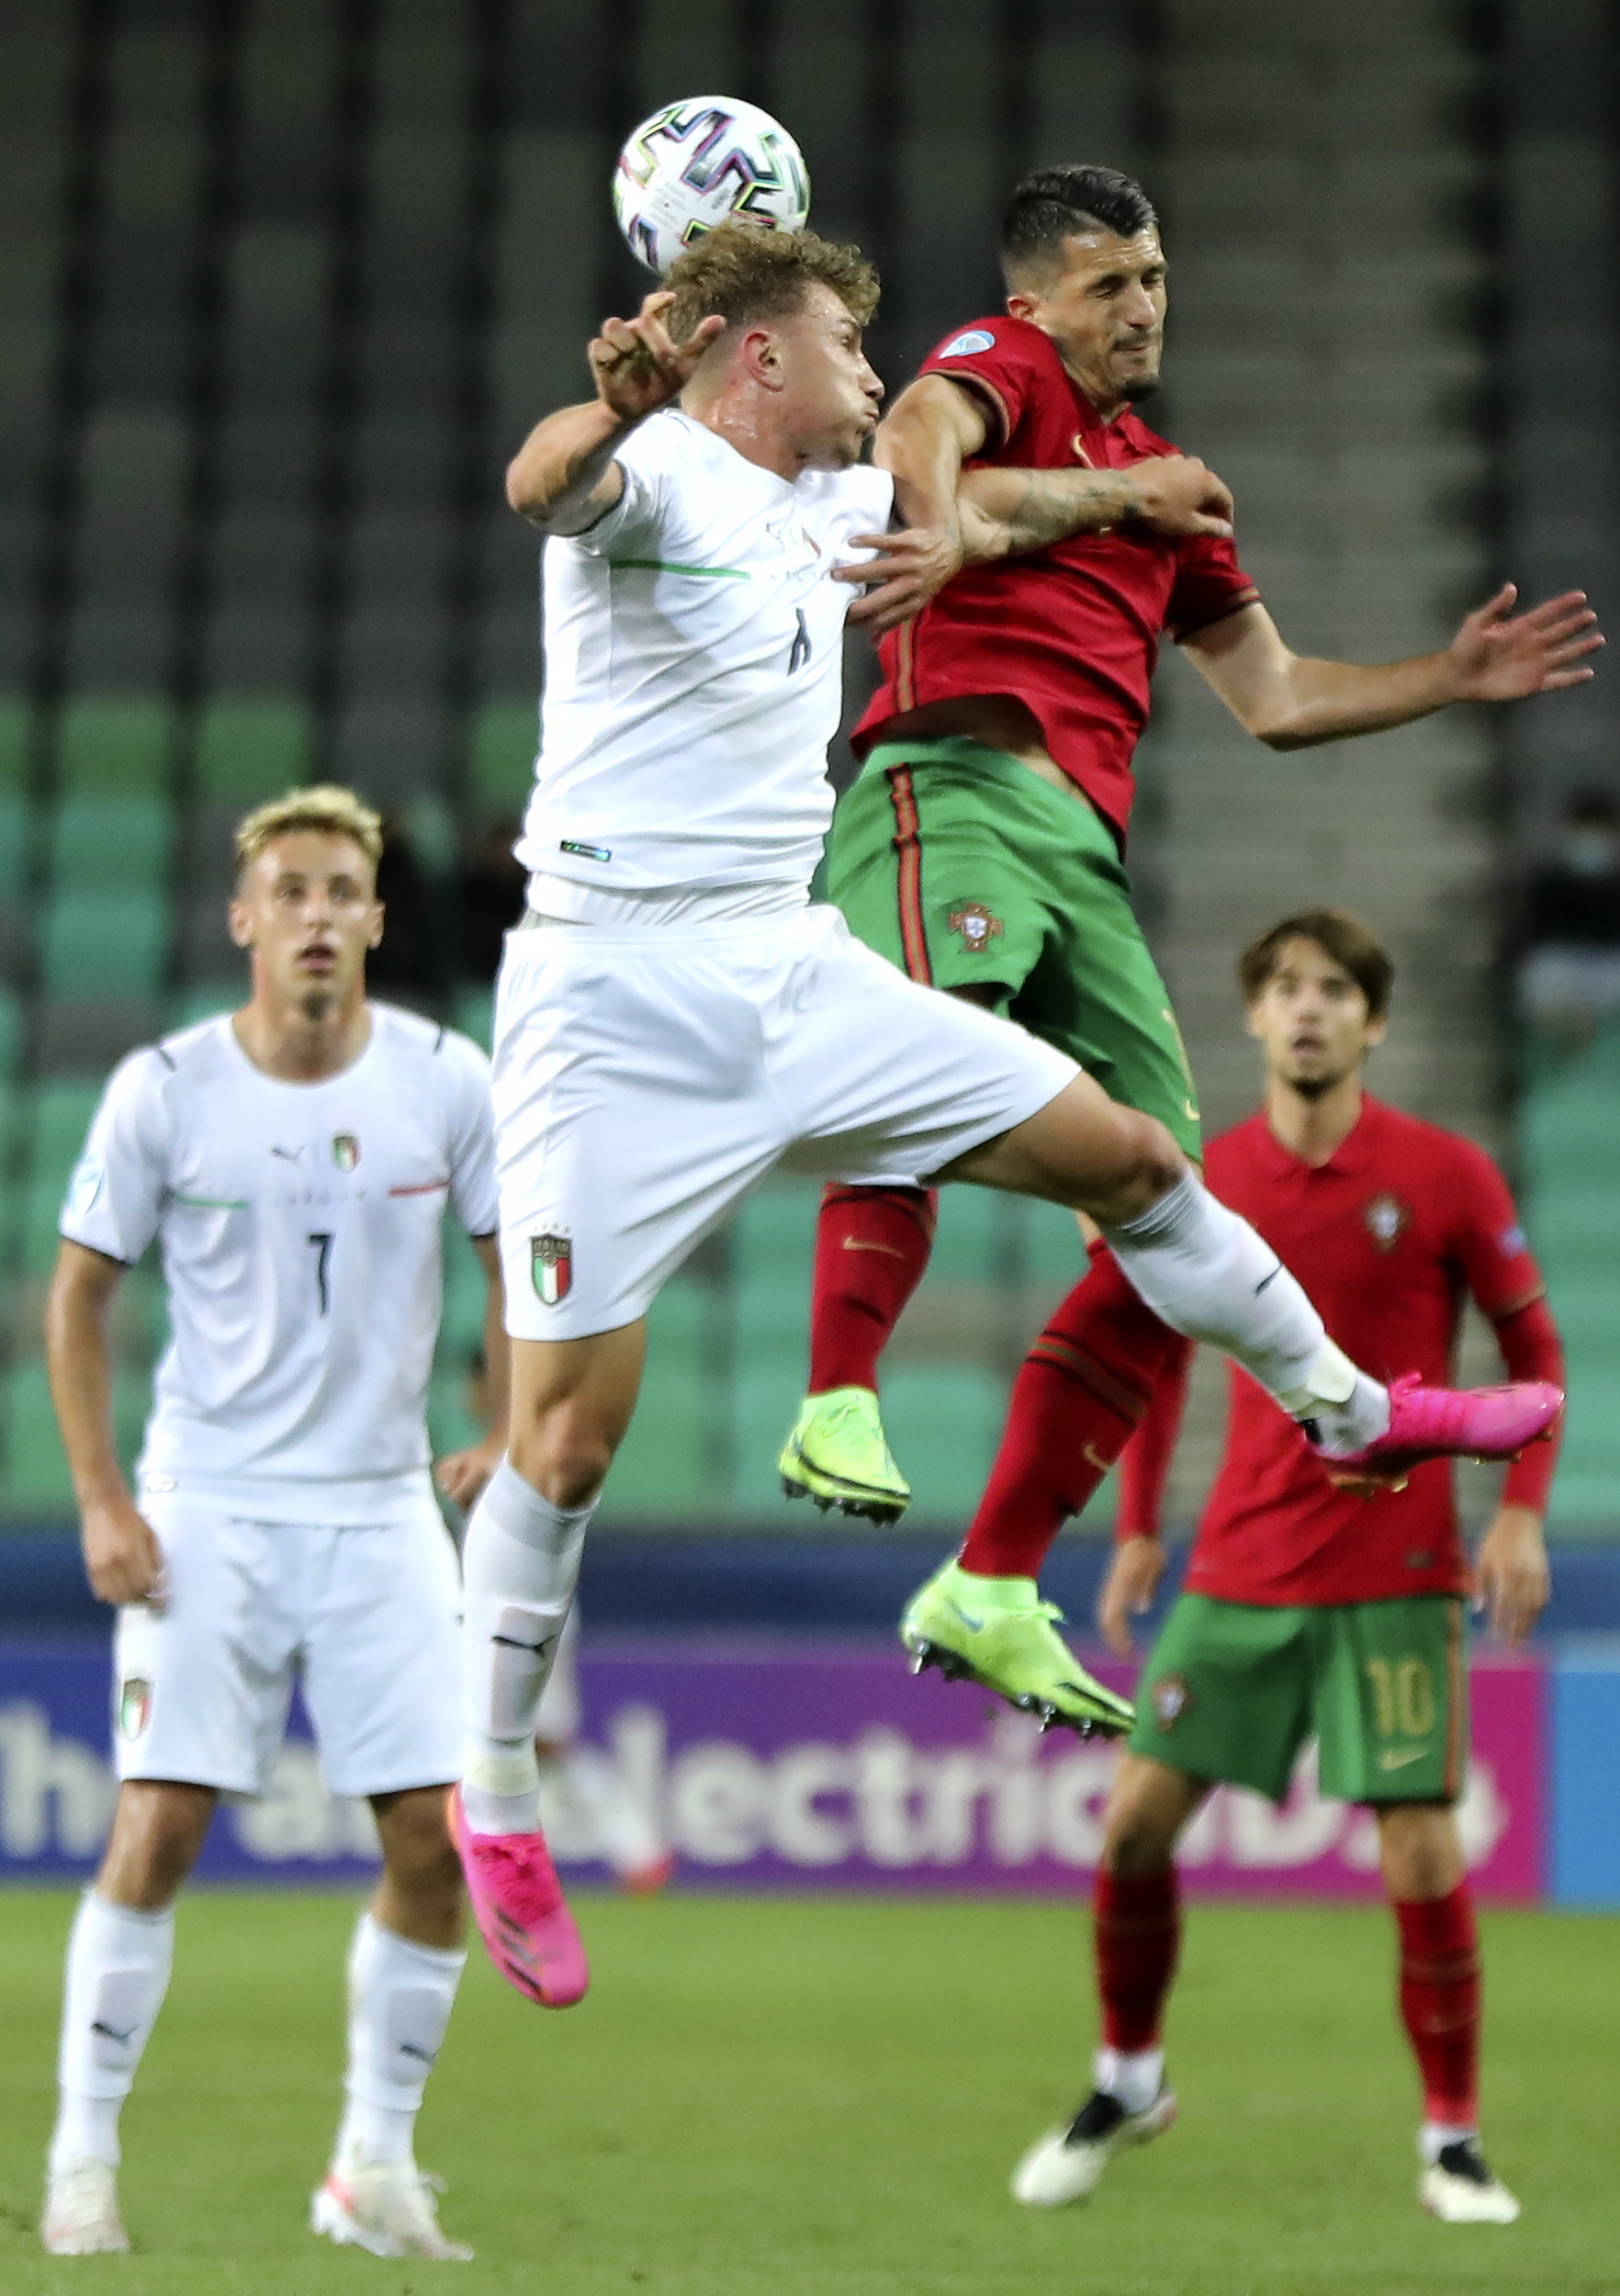 Sub-21 de Portugal vence Roménia em jogo particular com dois golaços - EURO  Sub 21 - SAPO Desporto